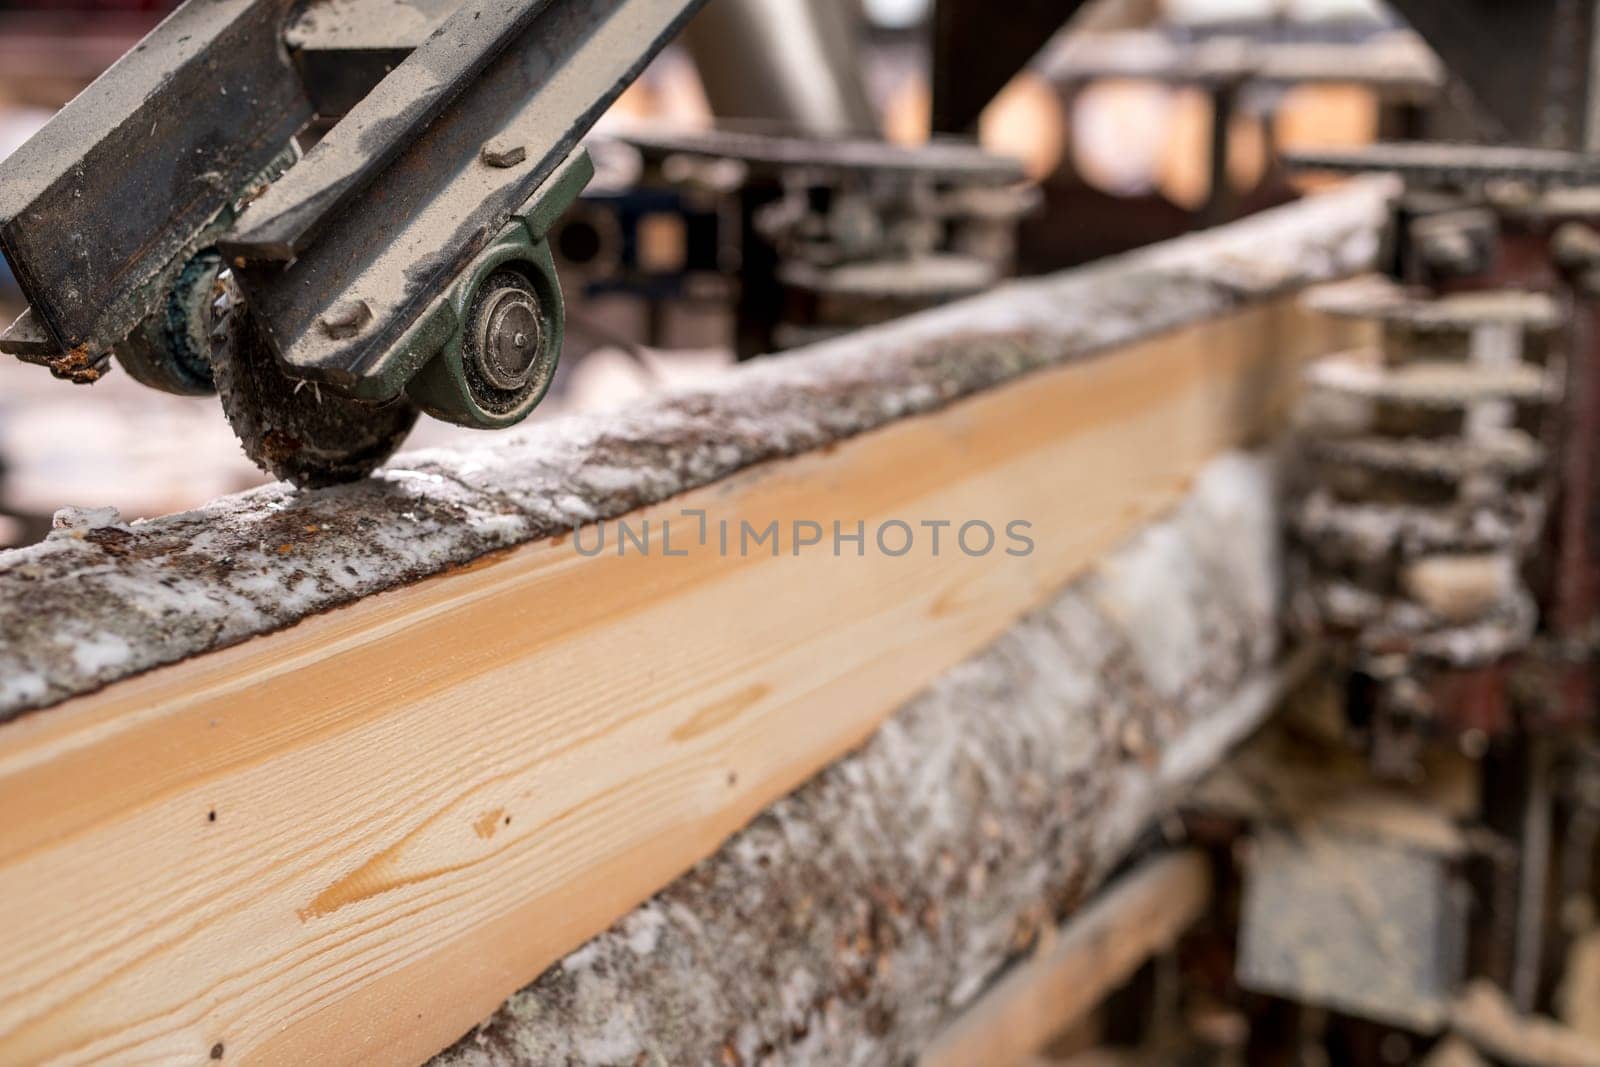 At sawmill. Image of cut wood using machine, close-up